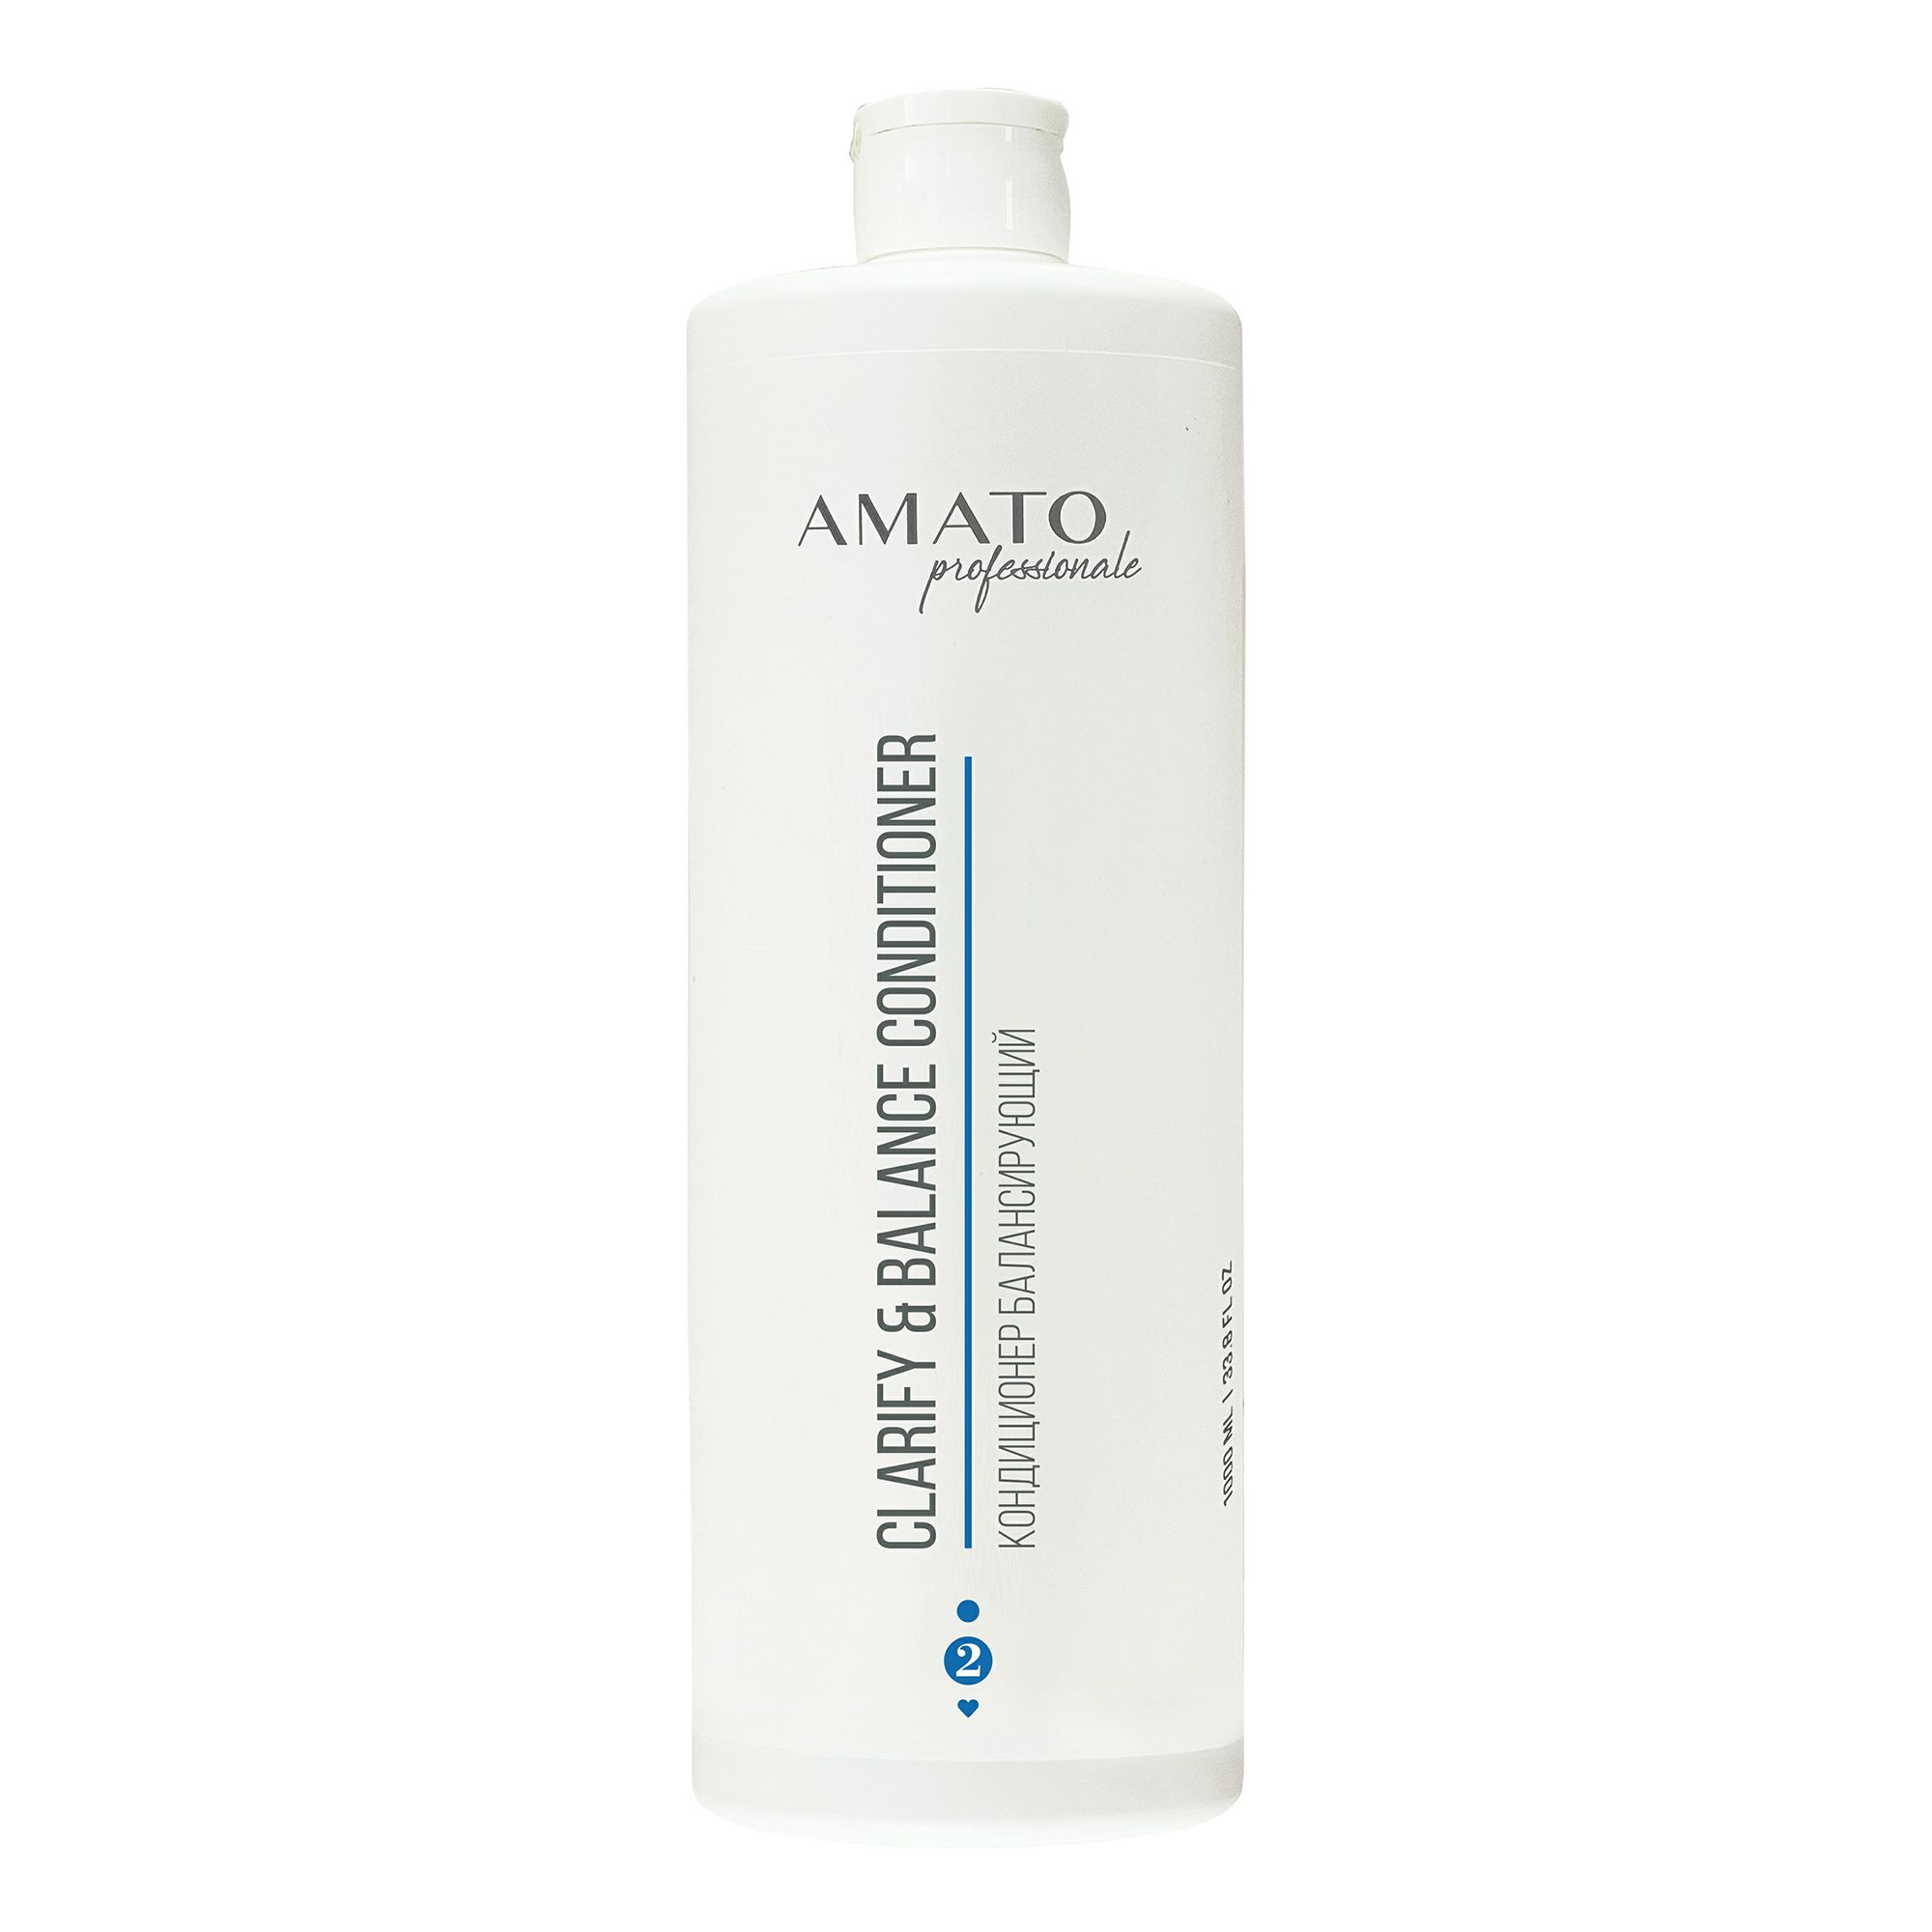 Кондиционер Amato professionale Clarify&Balance Балансирующий для всех типов волос 1 л